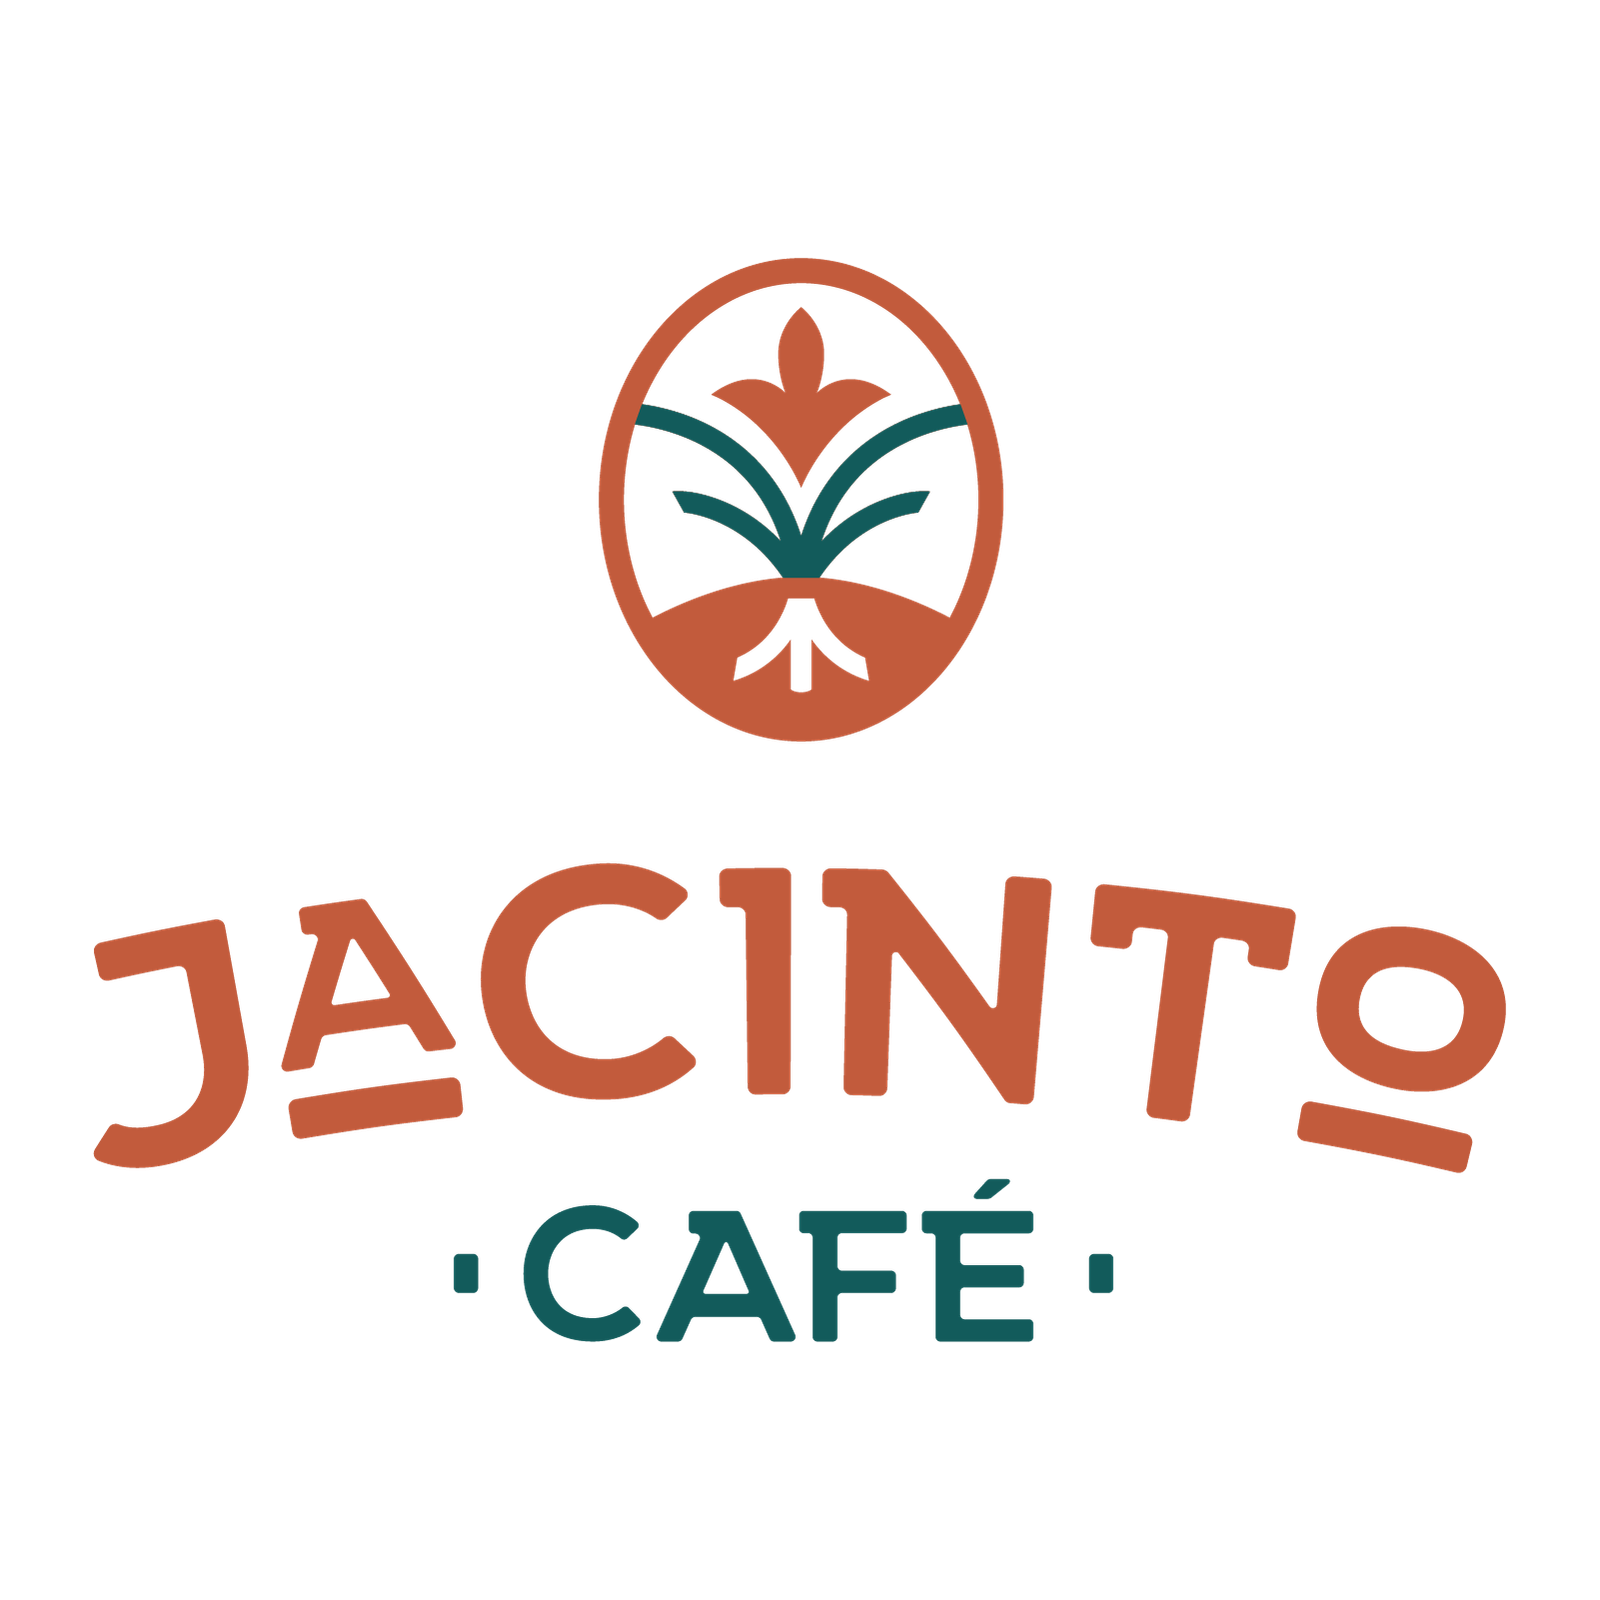 Jacinto Café